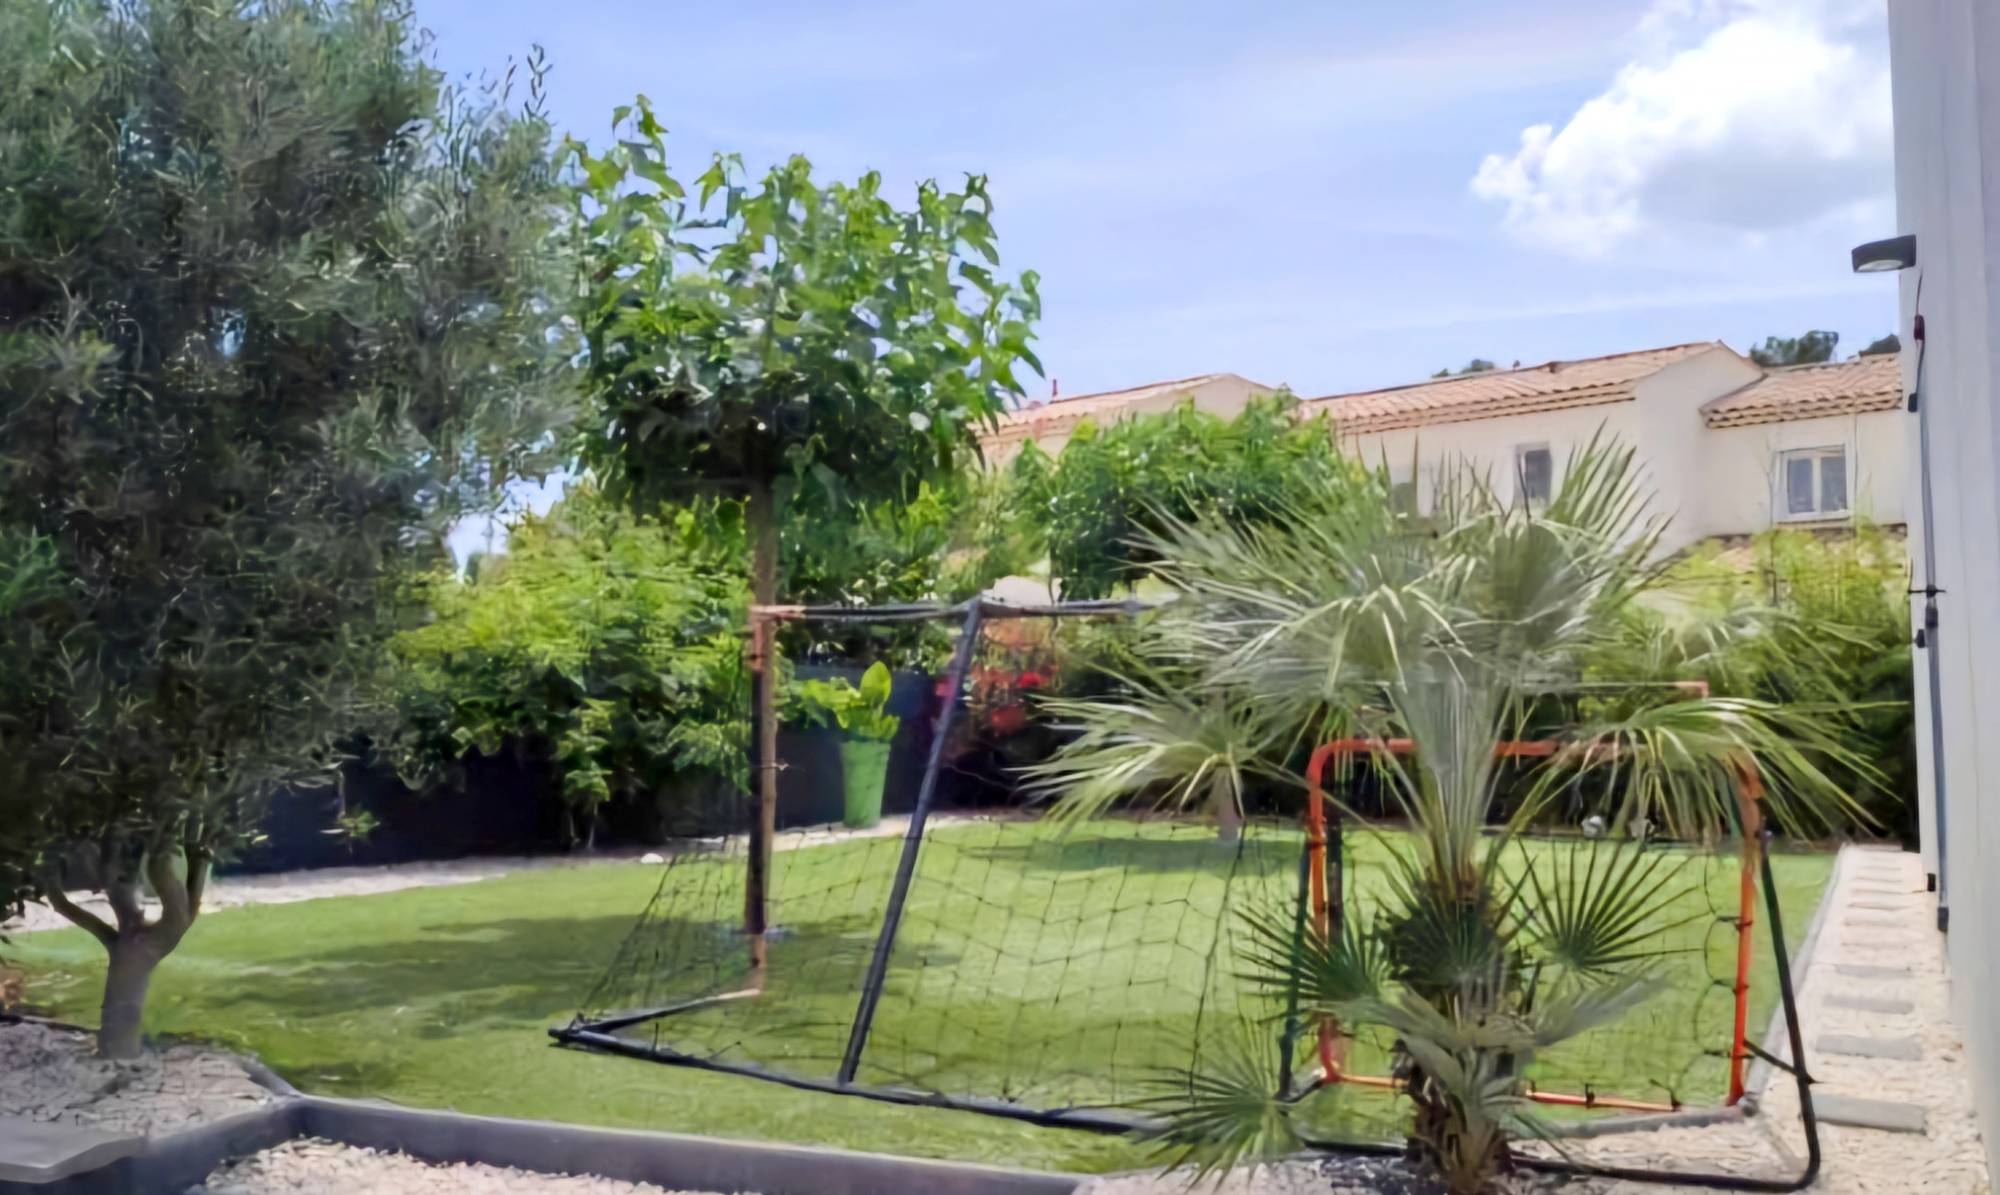 Maison moderne avec jardin à vendre quartier Léry à La Seyne